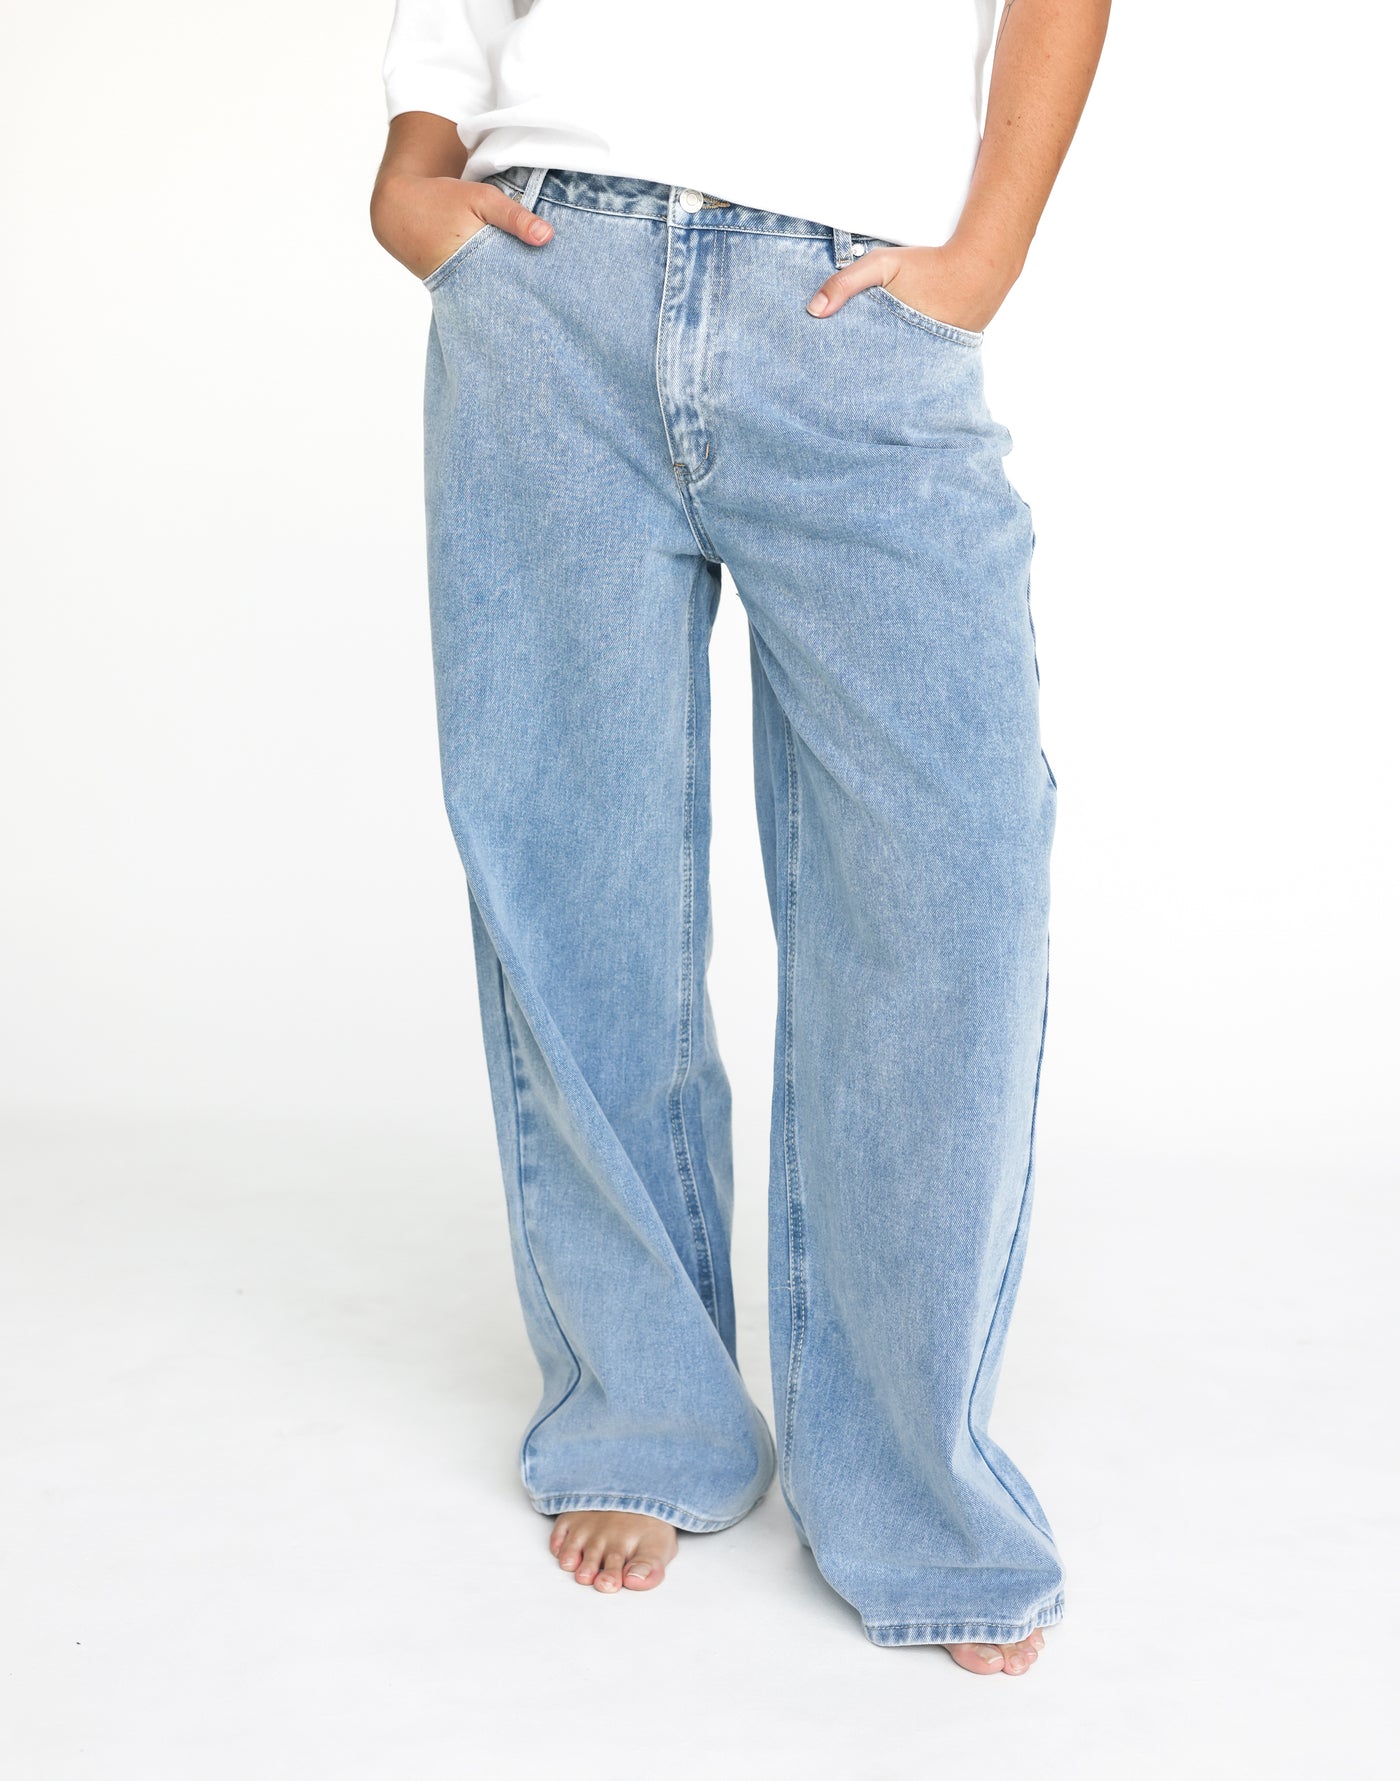 Roman Jeans (Light Vintage) | CHARCOAL Exclusive - Low Rise Wide Leg Jeans - Women's Pants - Charcoal Clothing